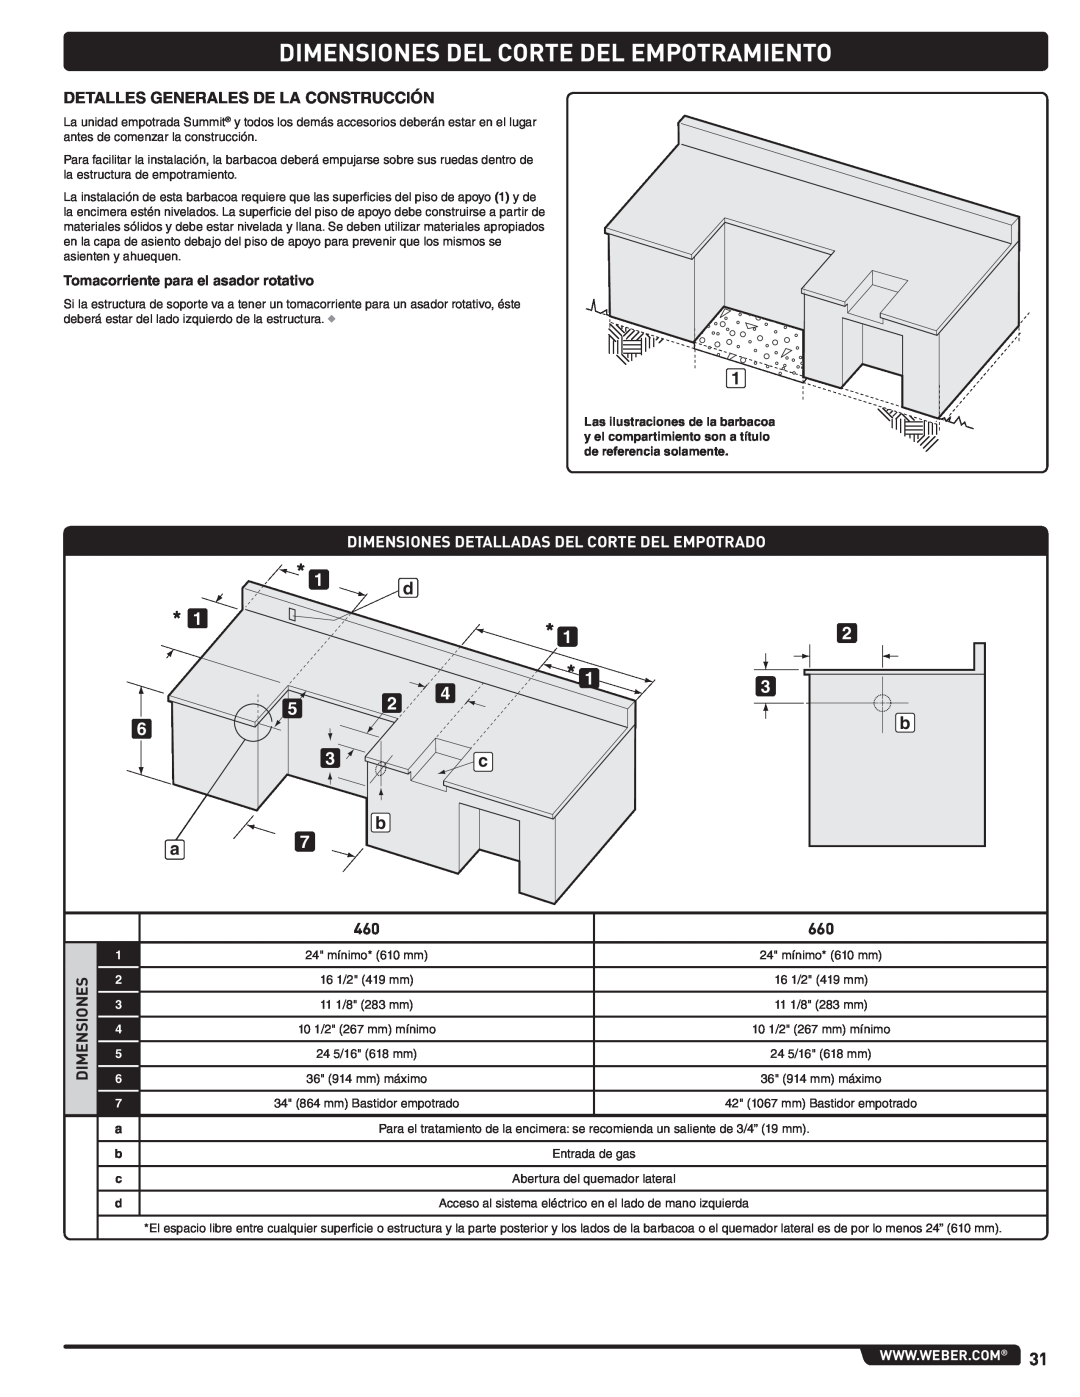 Weber 56576, Summit Gas Grill manual Dimensiones Del Corte Del Empotramiento, Detalles Generales De La Construcción 